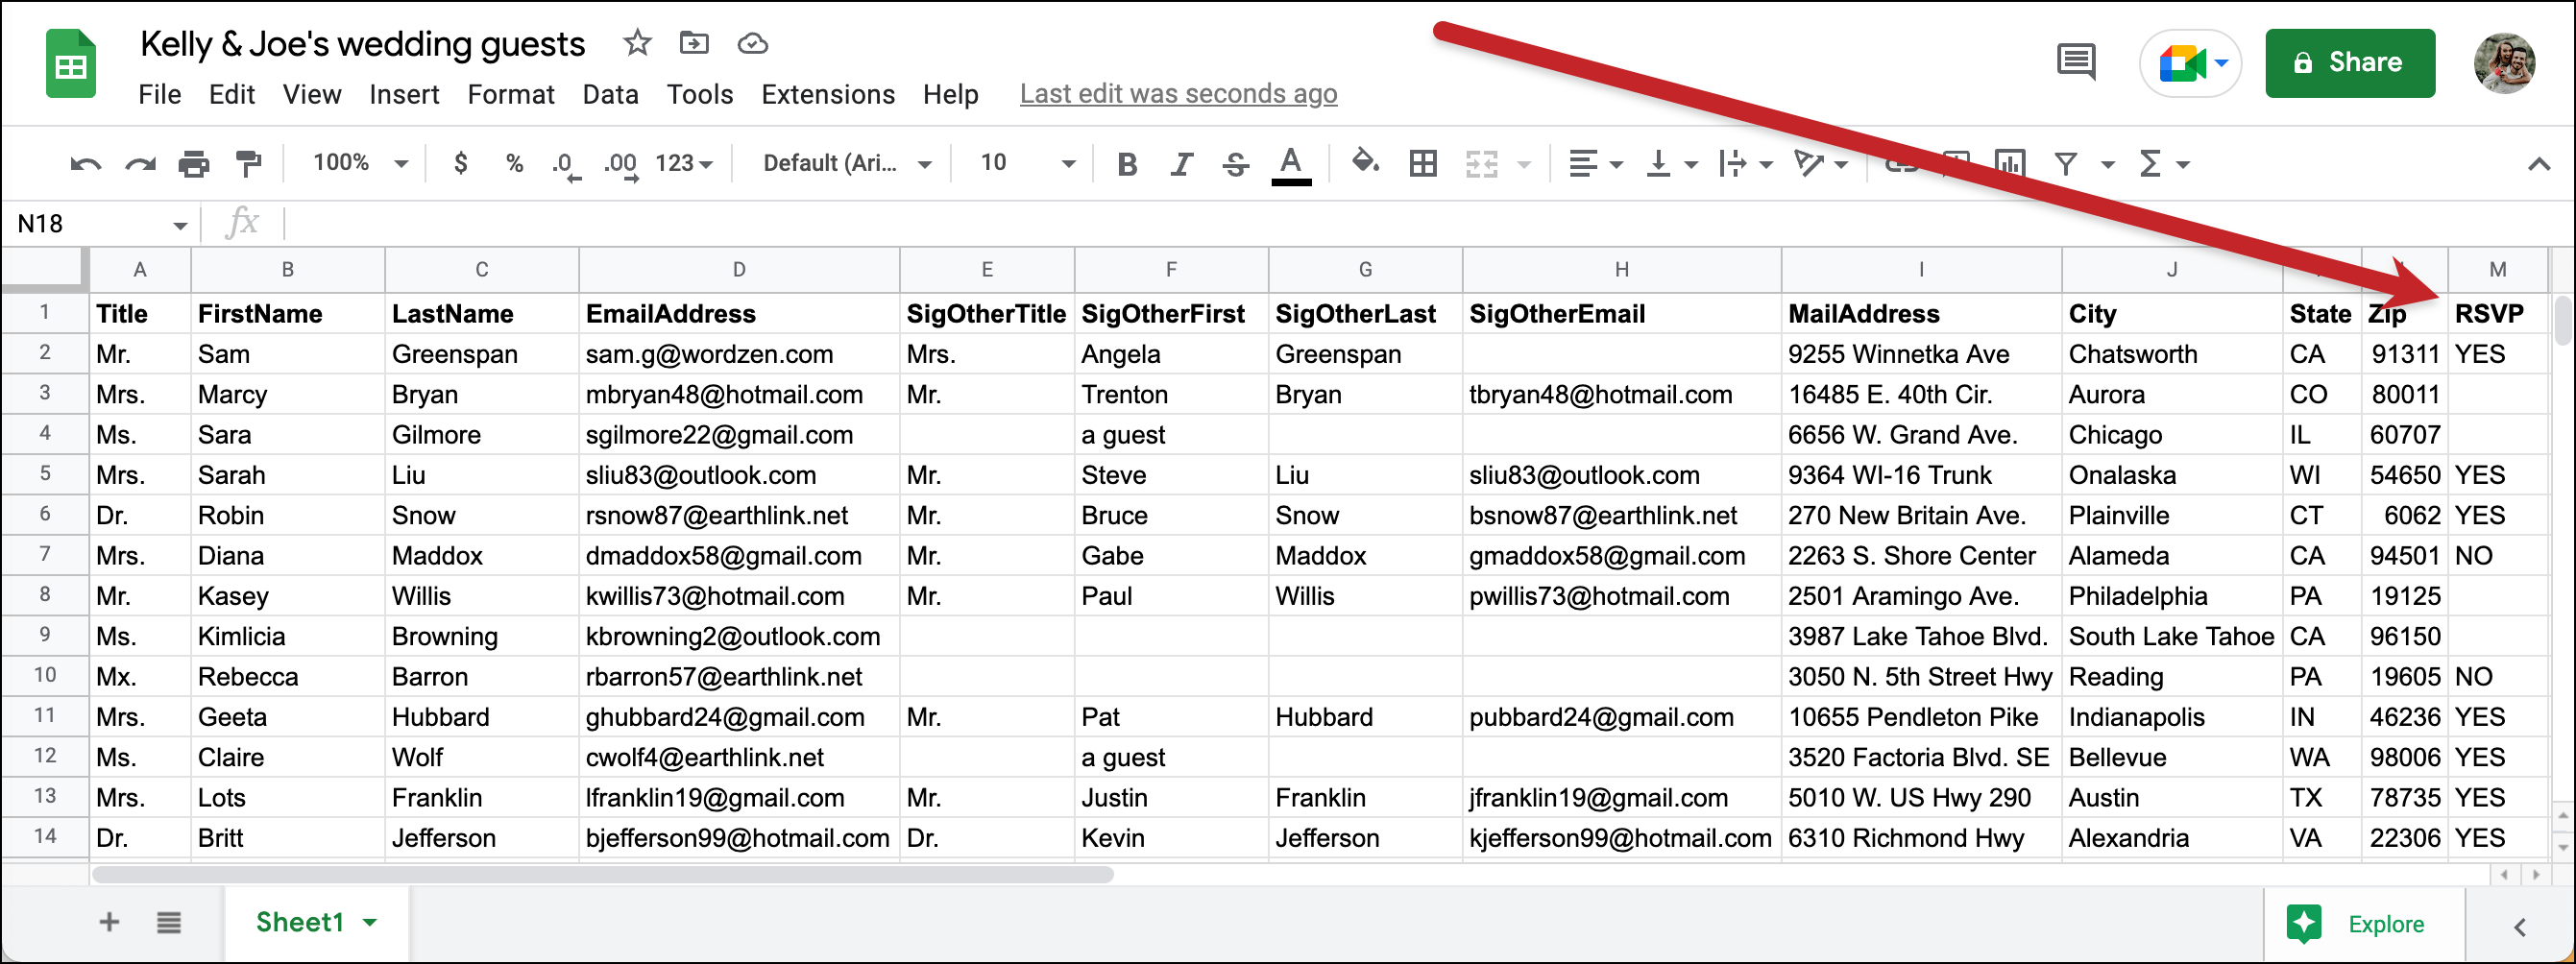 Add an RSVP column to the Google Sheet